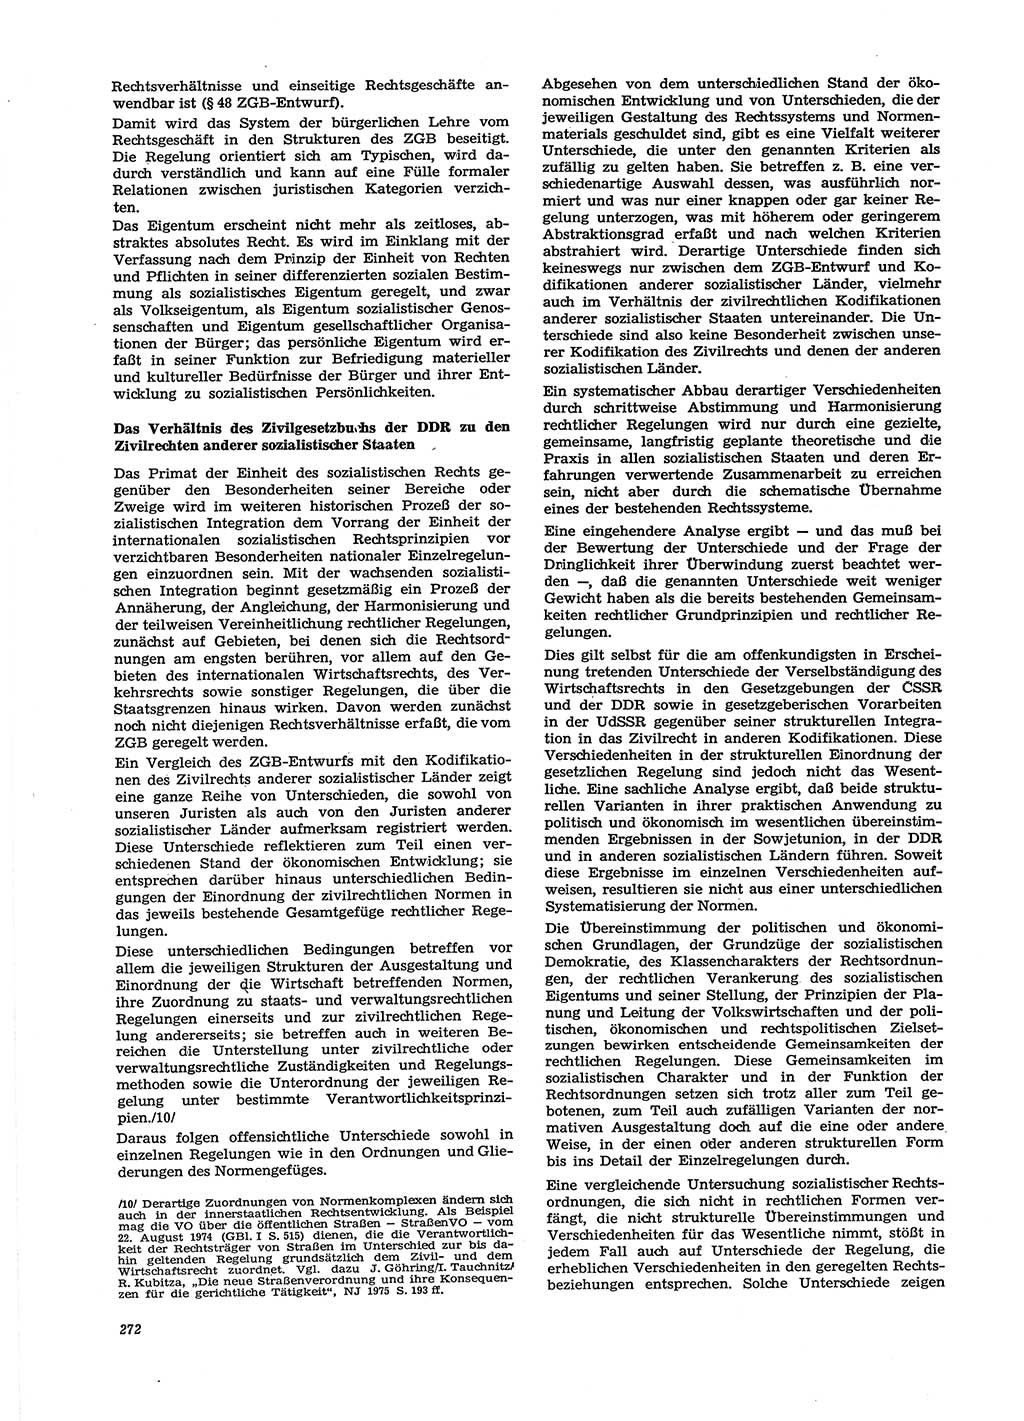 Neue Justiz (NJ), Zeitschrift für Recht und Rechtswissenschaft [Deutsche Demokratische Republik (DDR)], 29. Jahrgang 1975, Seite 272 (NJ DDR 1975, S. 272)